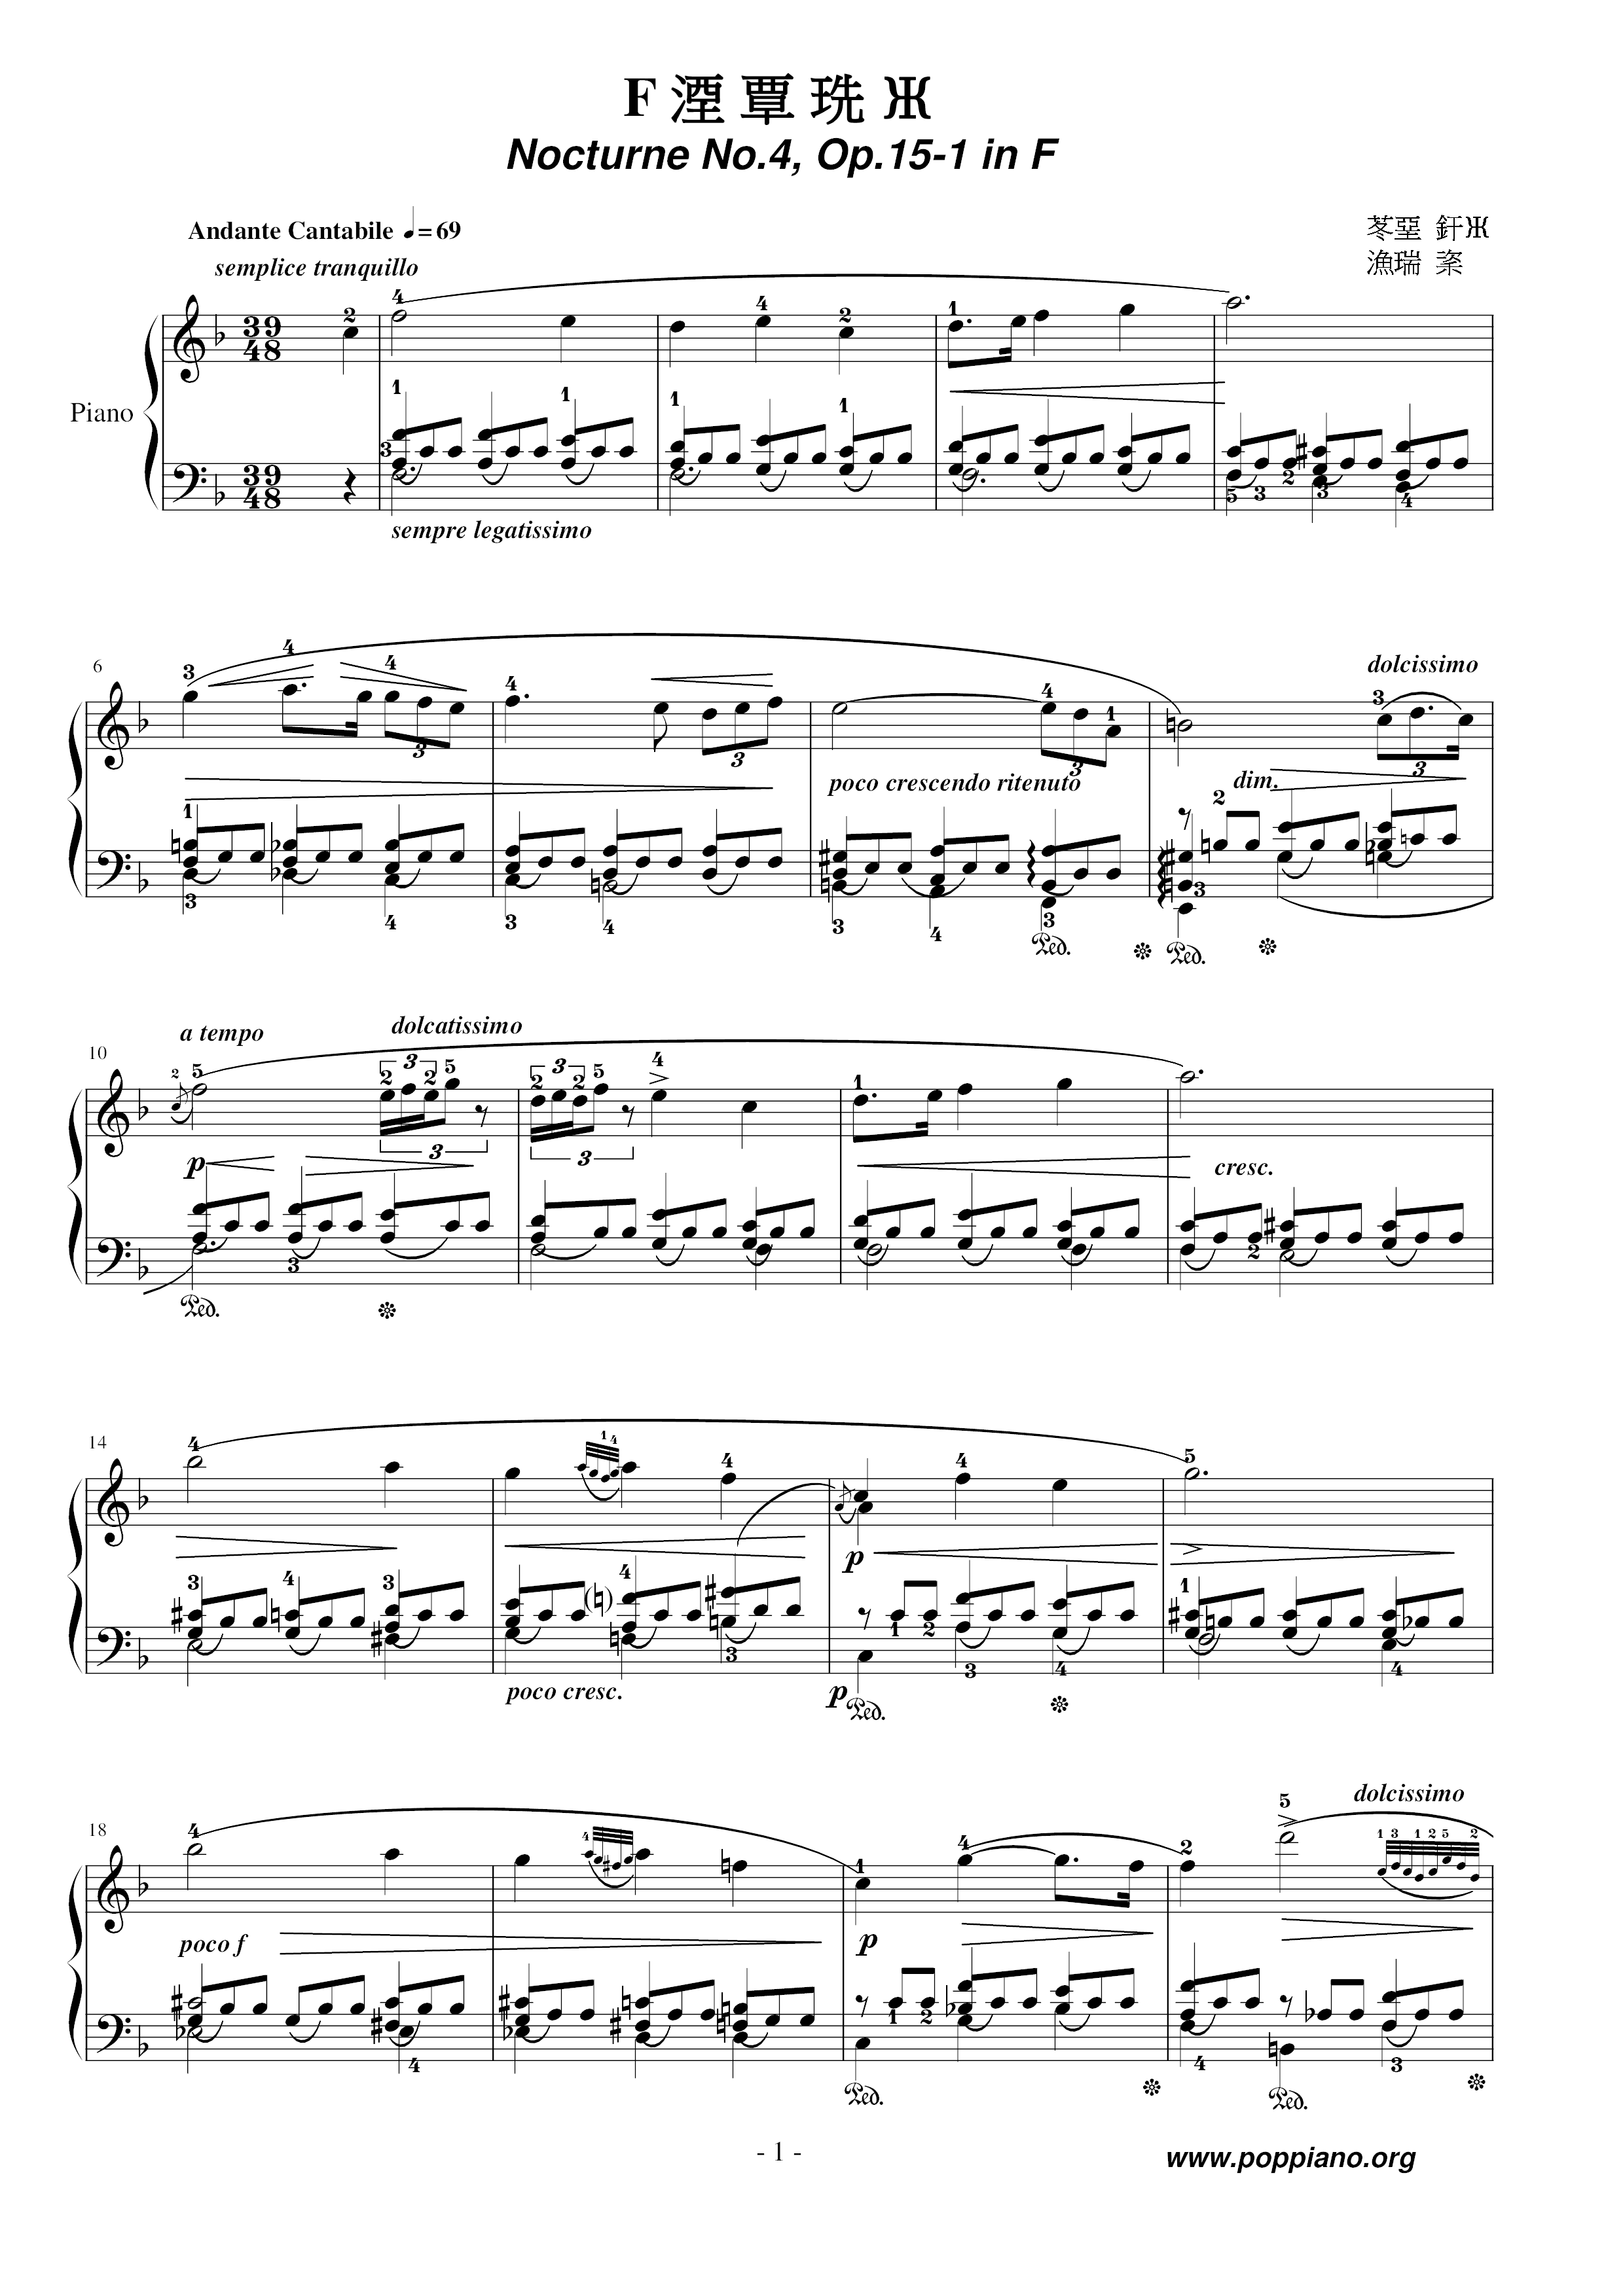 Nocturne No. 04 Score